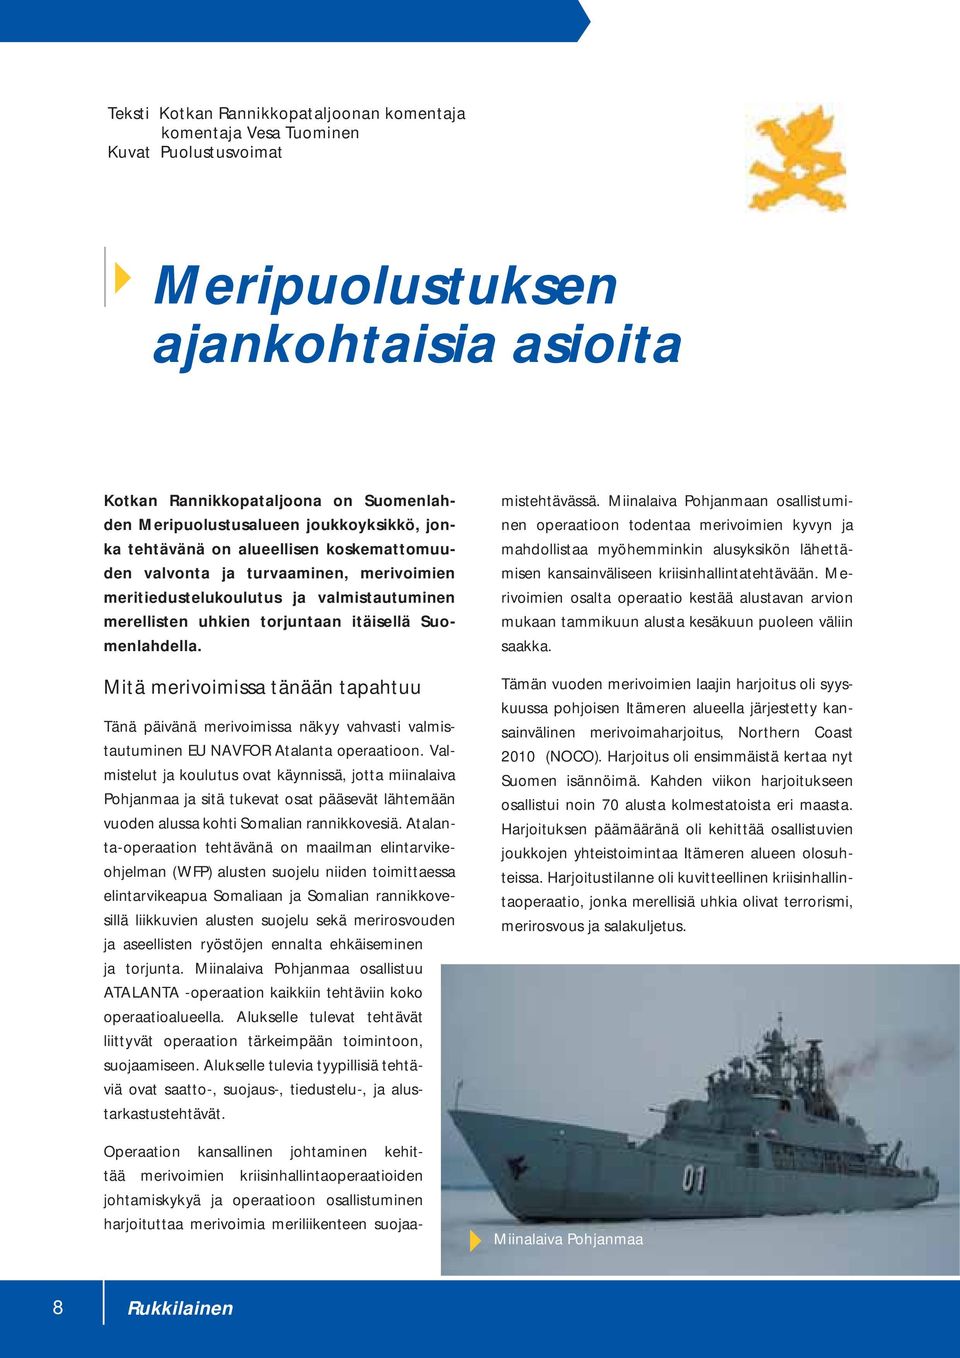 Mitä merivoimissa tänään tapahtuu Tänä päivänä merivoimissa näkyy vahvasti valmistautuminen EU NAVFOR Atalanta operaatioon.